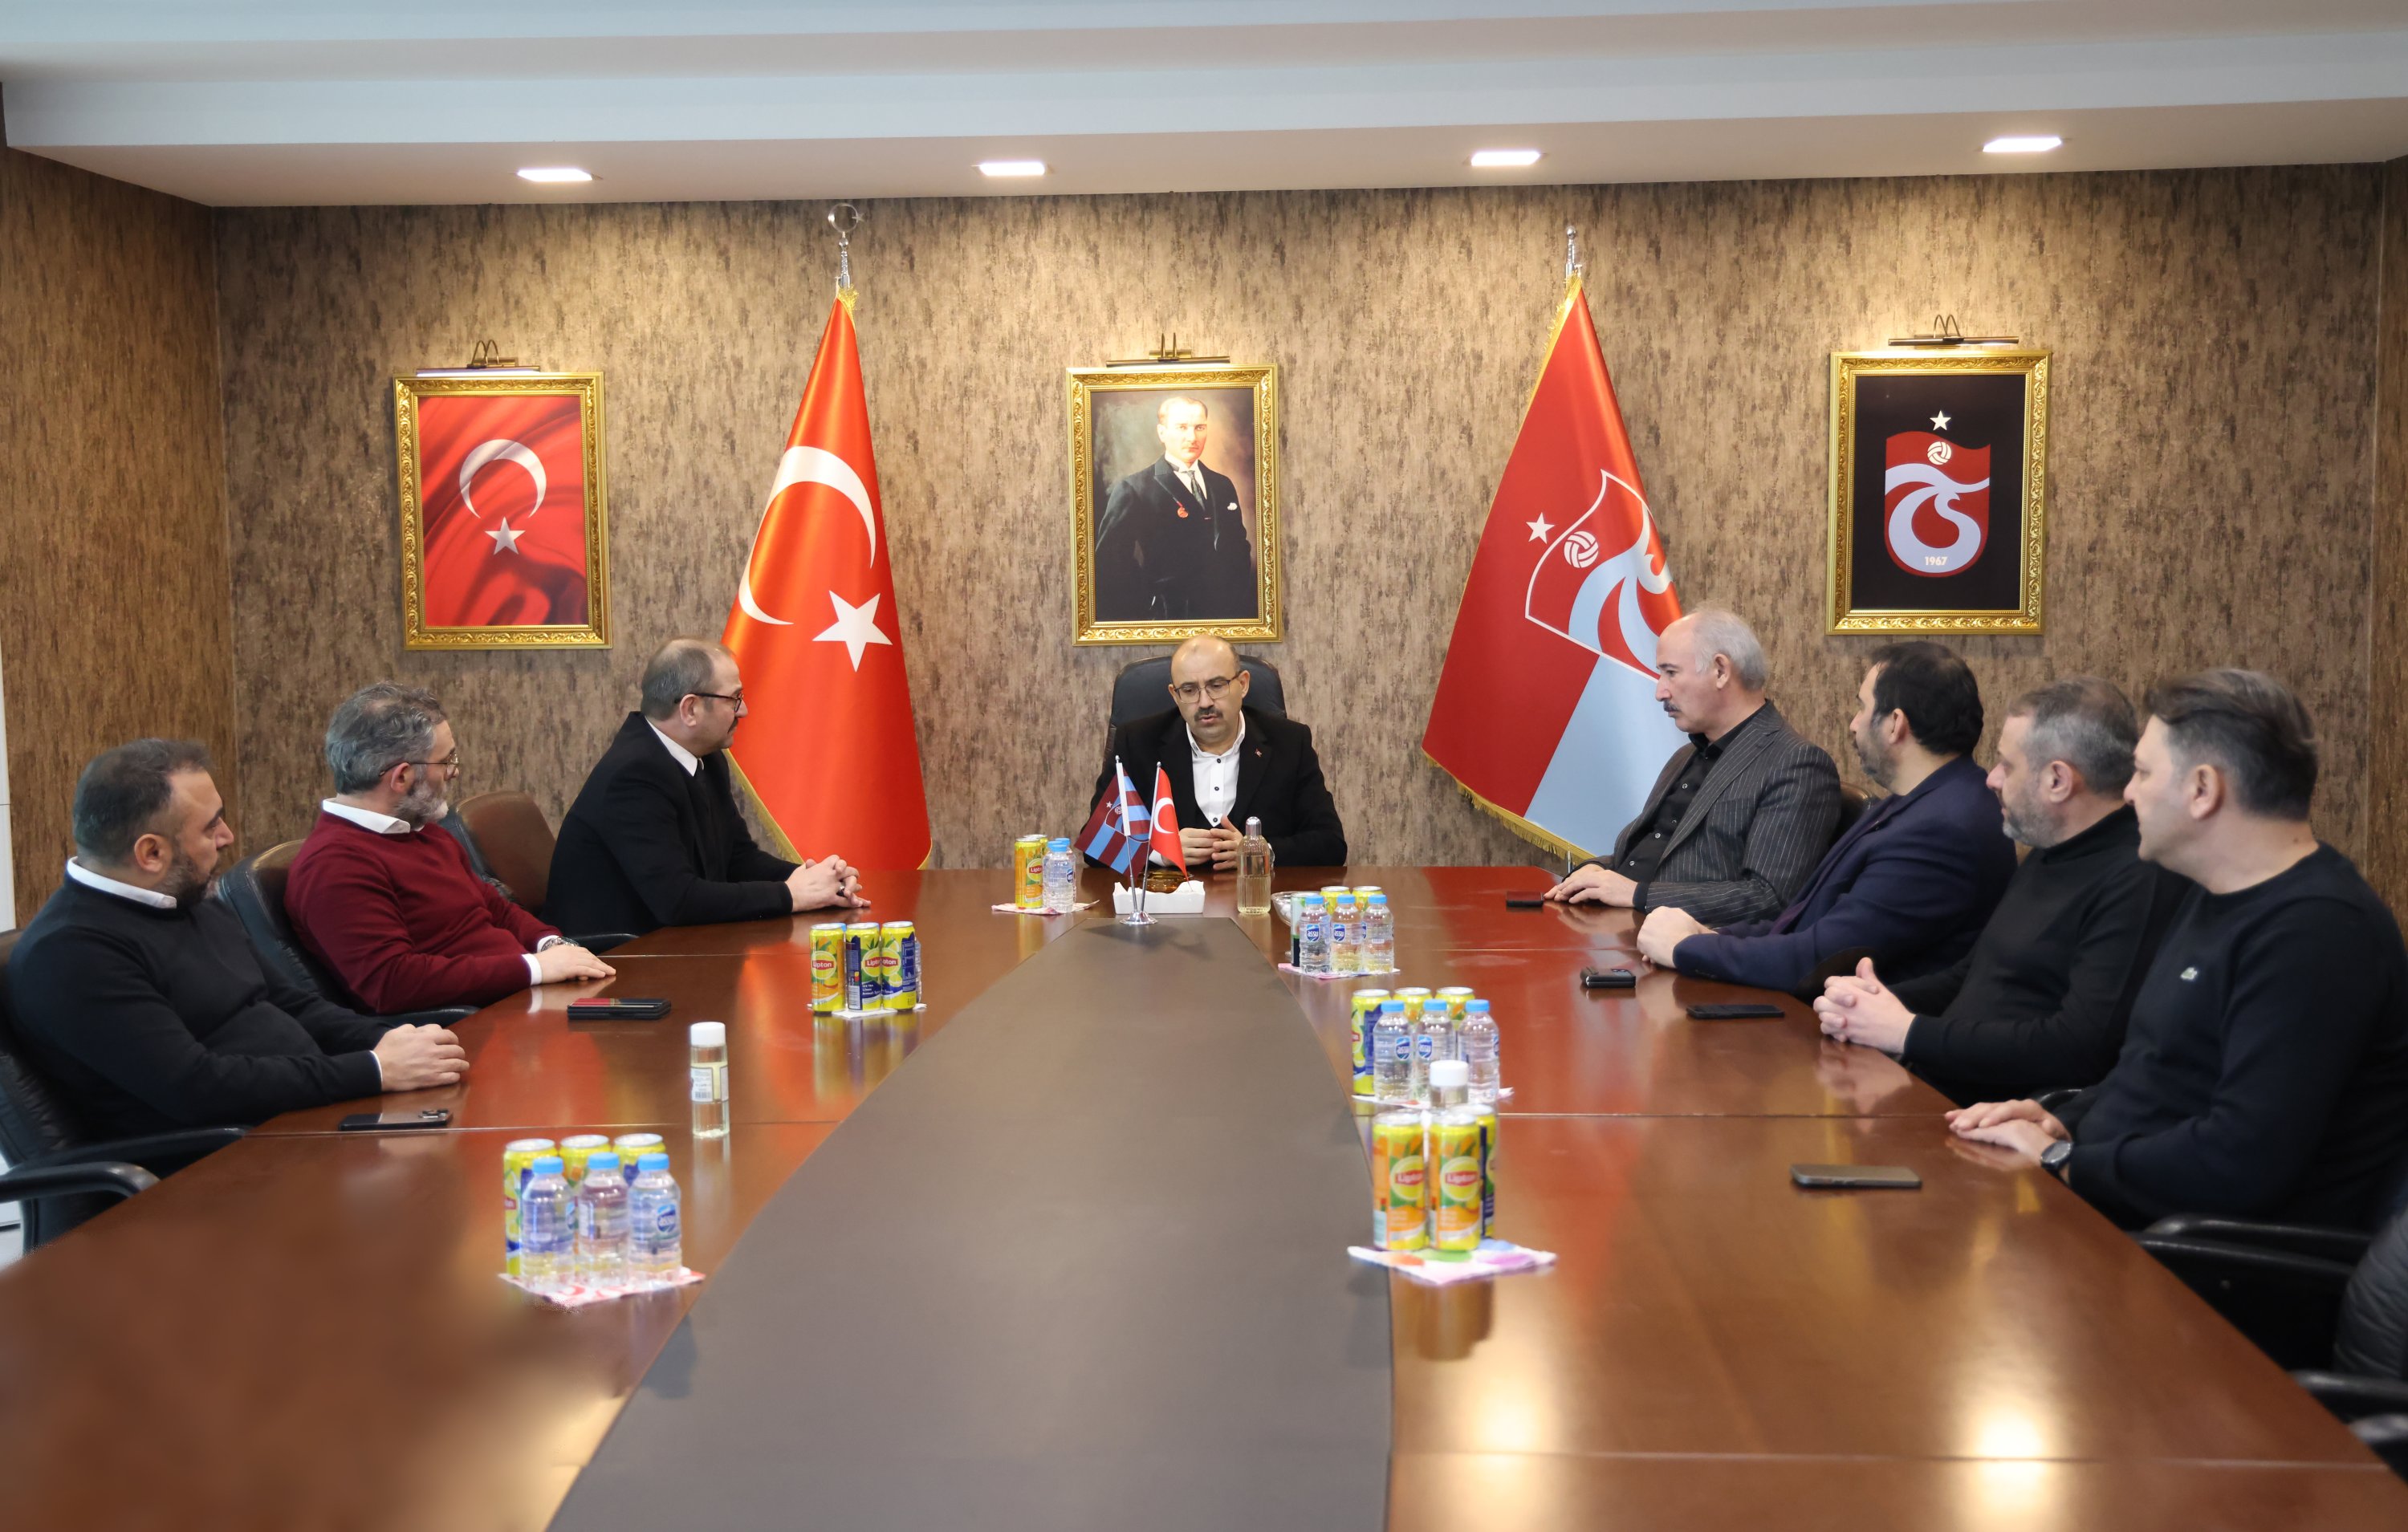 Gubernur Trabzon Ismail Ustaoğlu (ke-4 dari kiri) dan Wakil Walikota Kota Metropolitan Atilla Ataman (ke-4 dari kanan) selama kunjungan mereka di fasilitas Trabzonspor berbicara dengan dewan Trabzonspor, Trabzon, Türkiye, 14 Februari 2023. (Foto AA)